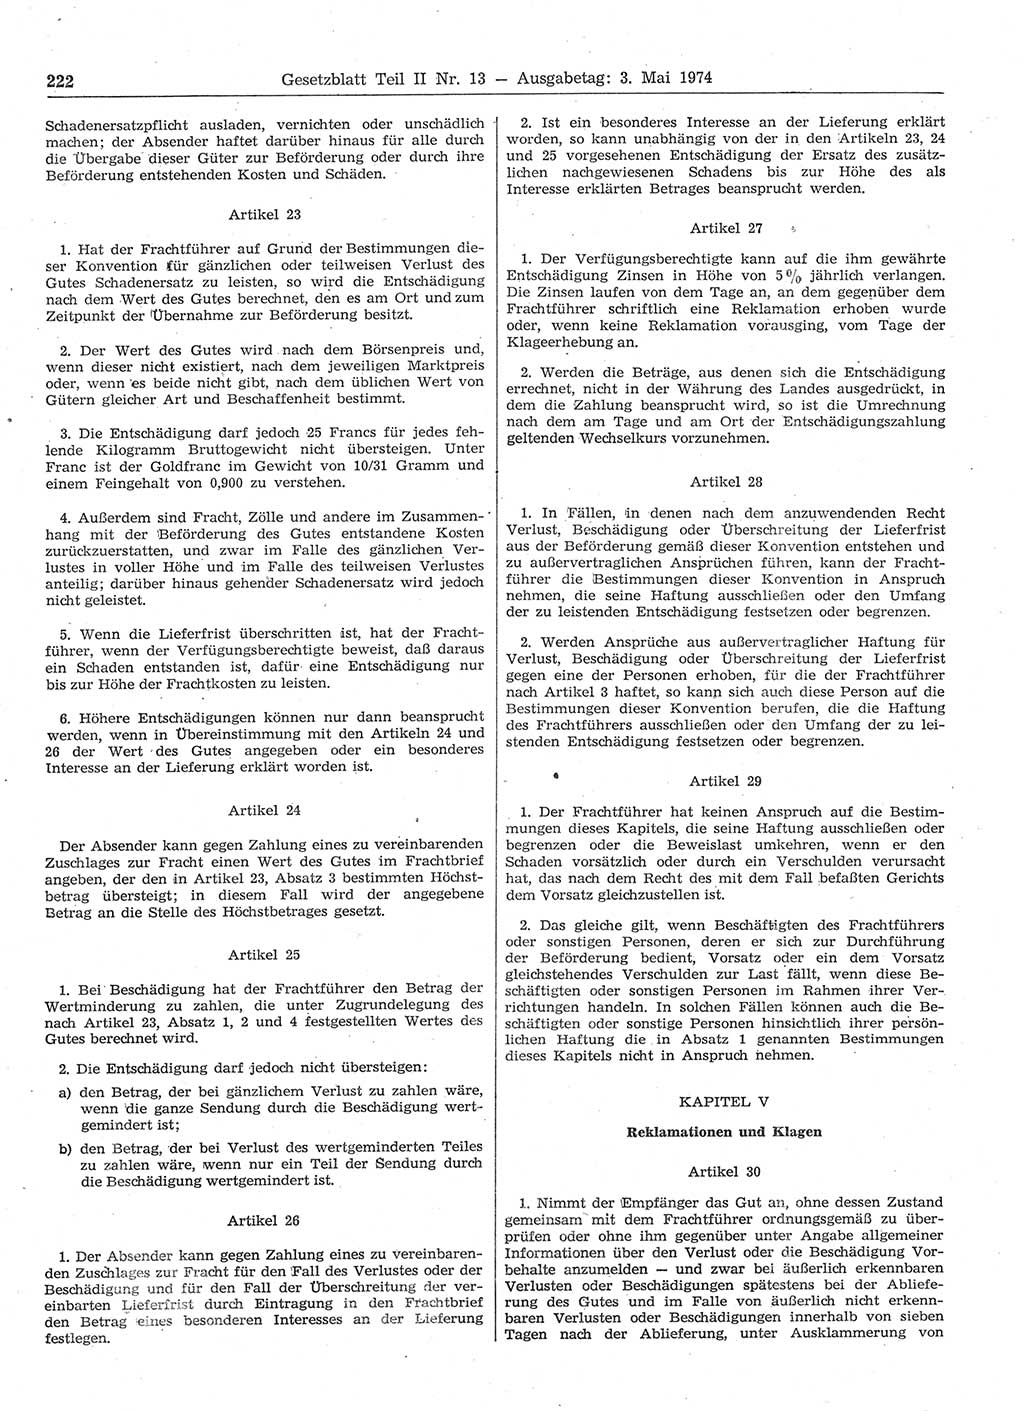 Gesetzblatt (GBl.) der Deutschen Demokratischen Republik (DDR) Teil ⅠⅠ 1974, Seite 222 (GBl. DDR ⅠⅠ 1974, S. 222)